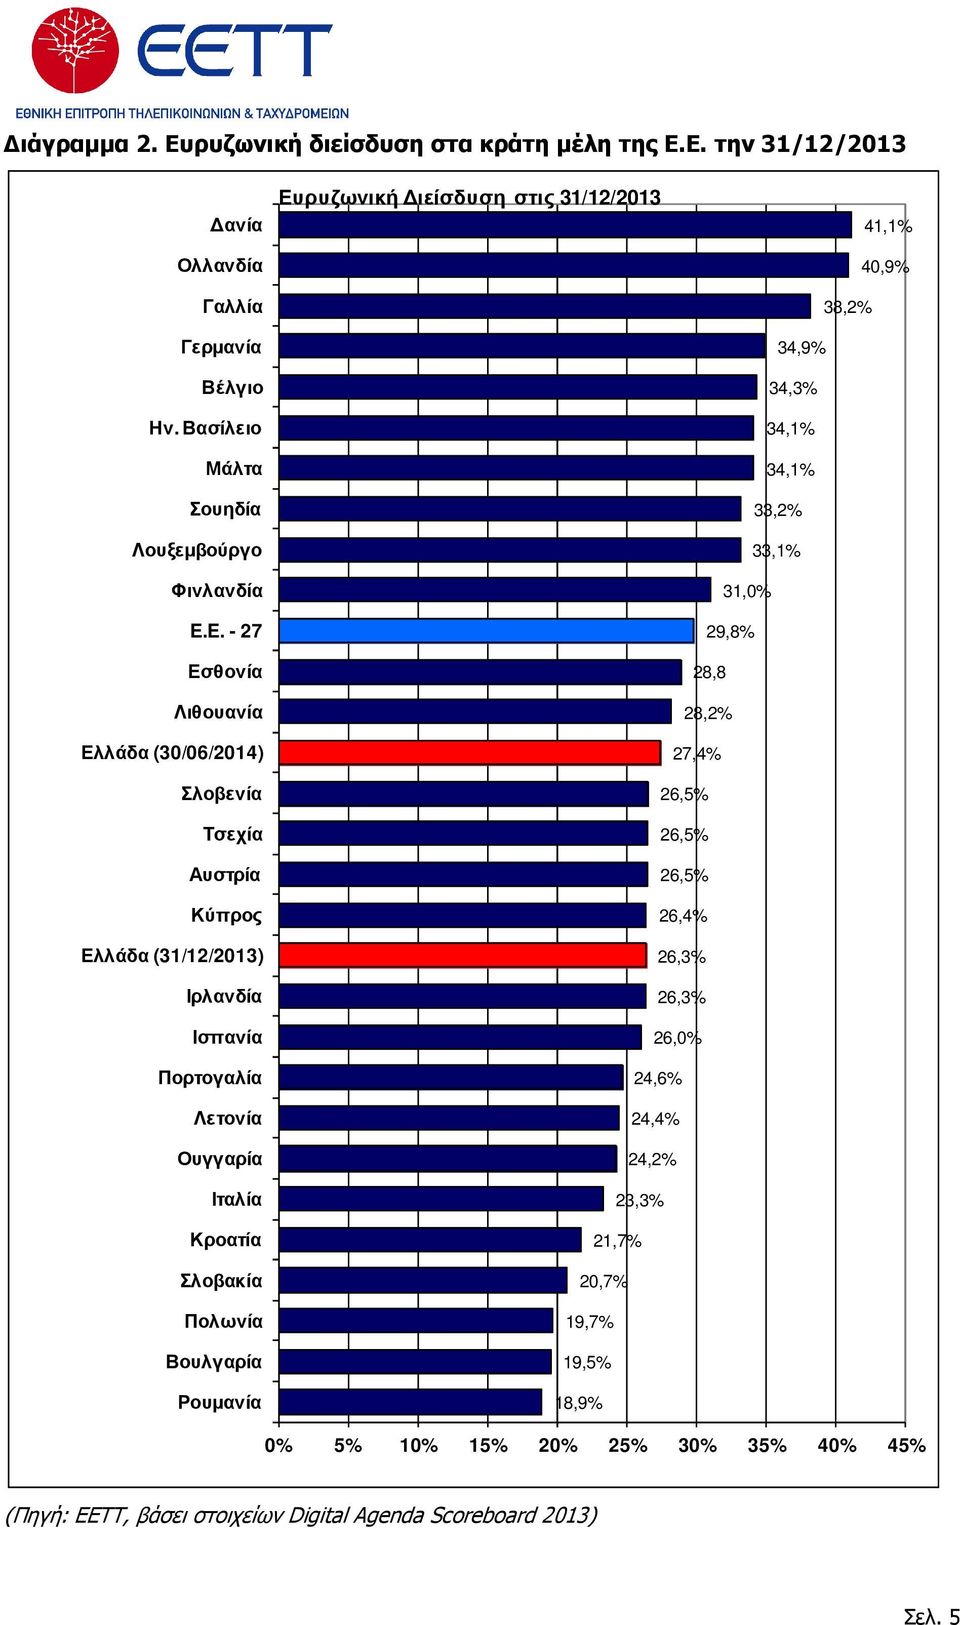 Σλοβενία Τσεχία Αυστρία Κύπρος Ελλάδα (31/12/2013) Ιρλανδία Ισπανία Πορτογαλία Λετονία Ουγγαρία Ιταλία Κροατία Σλοβακία Πολωνία Βουλγαρία Ρουµανία 26,5% 26,5% 26,5%